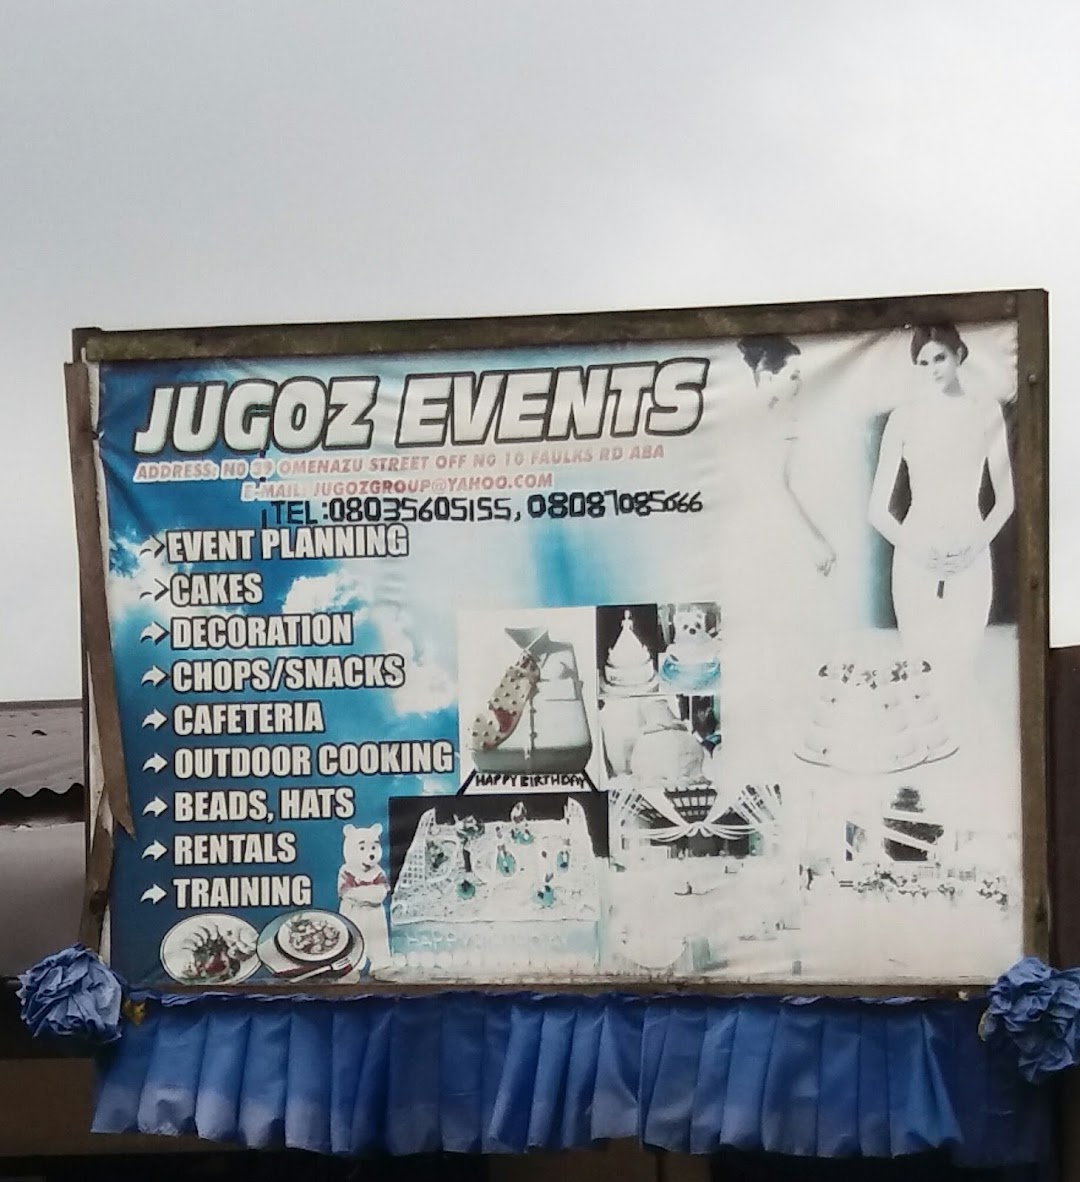 Jugoz Events